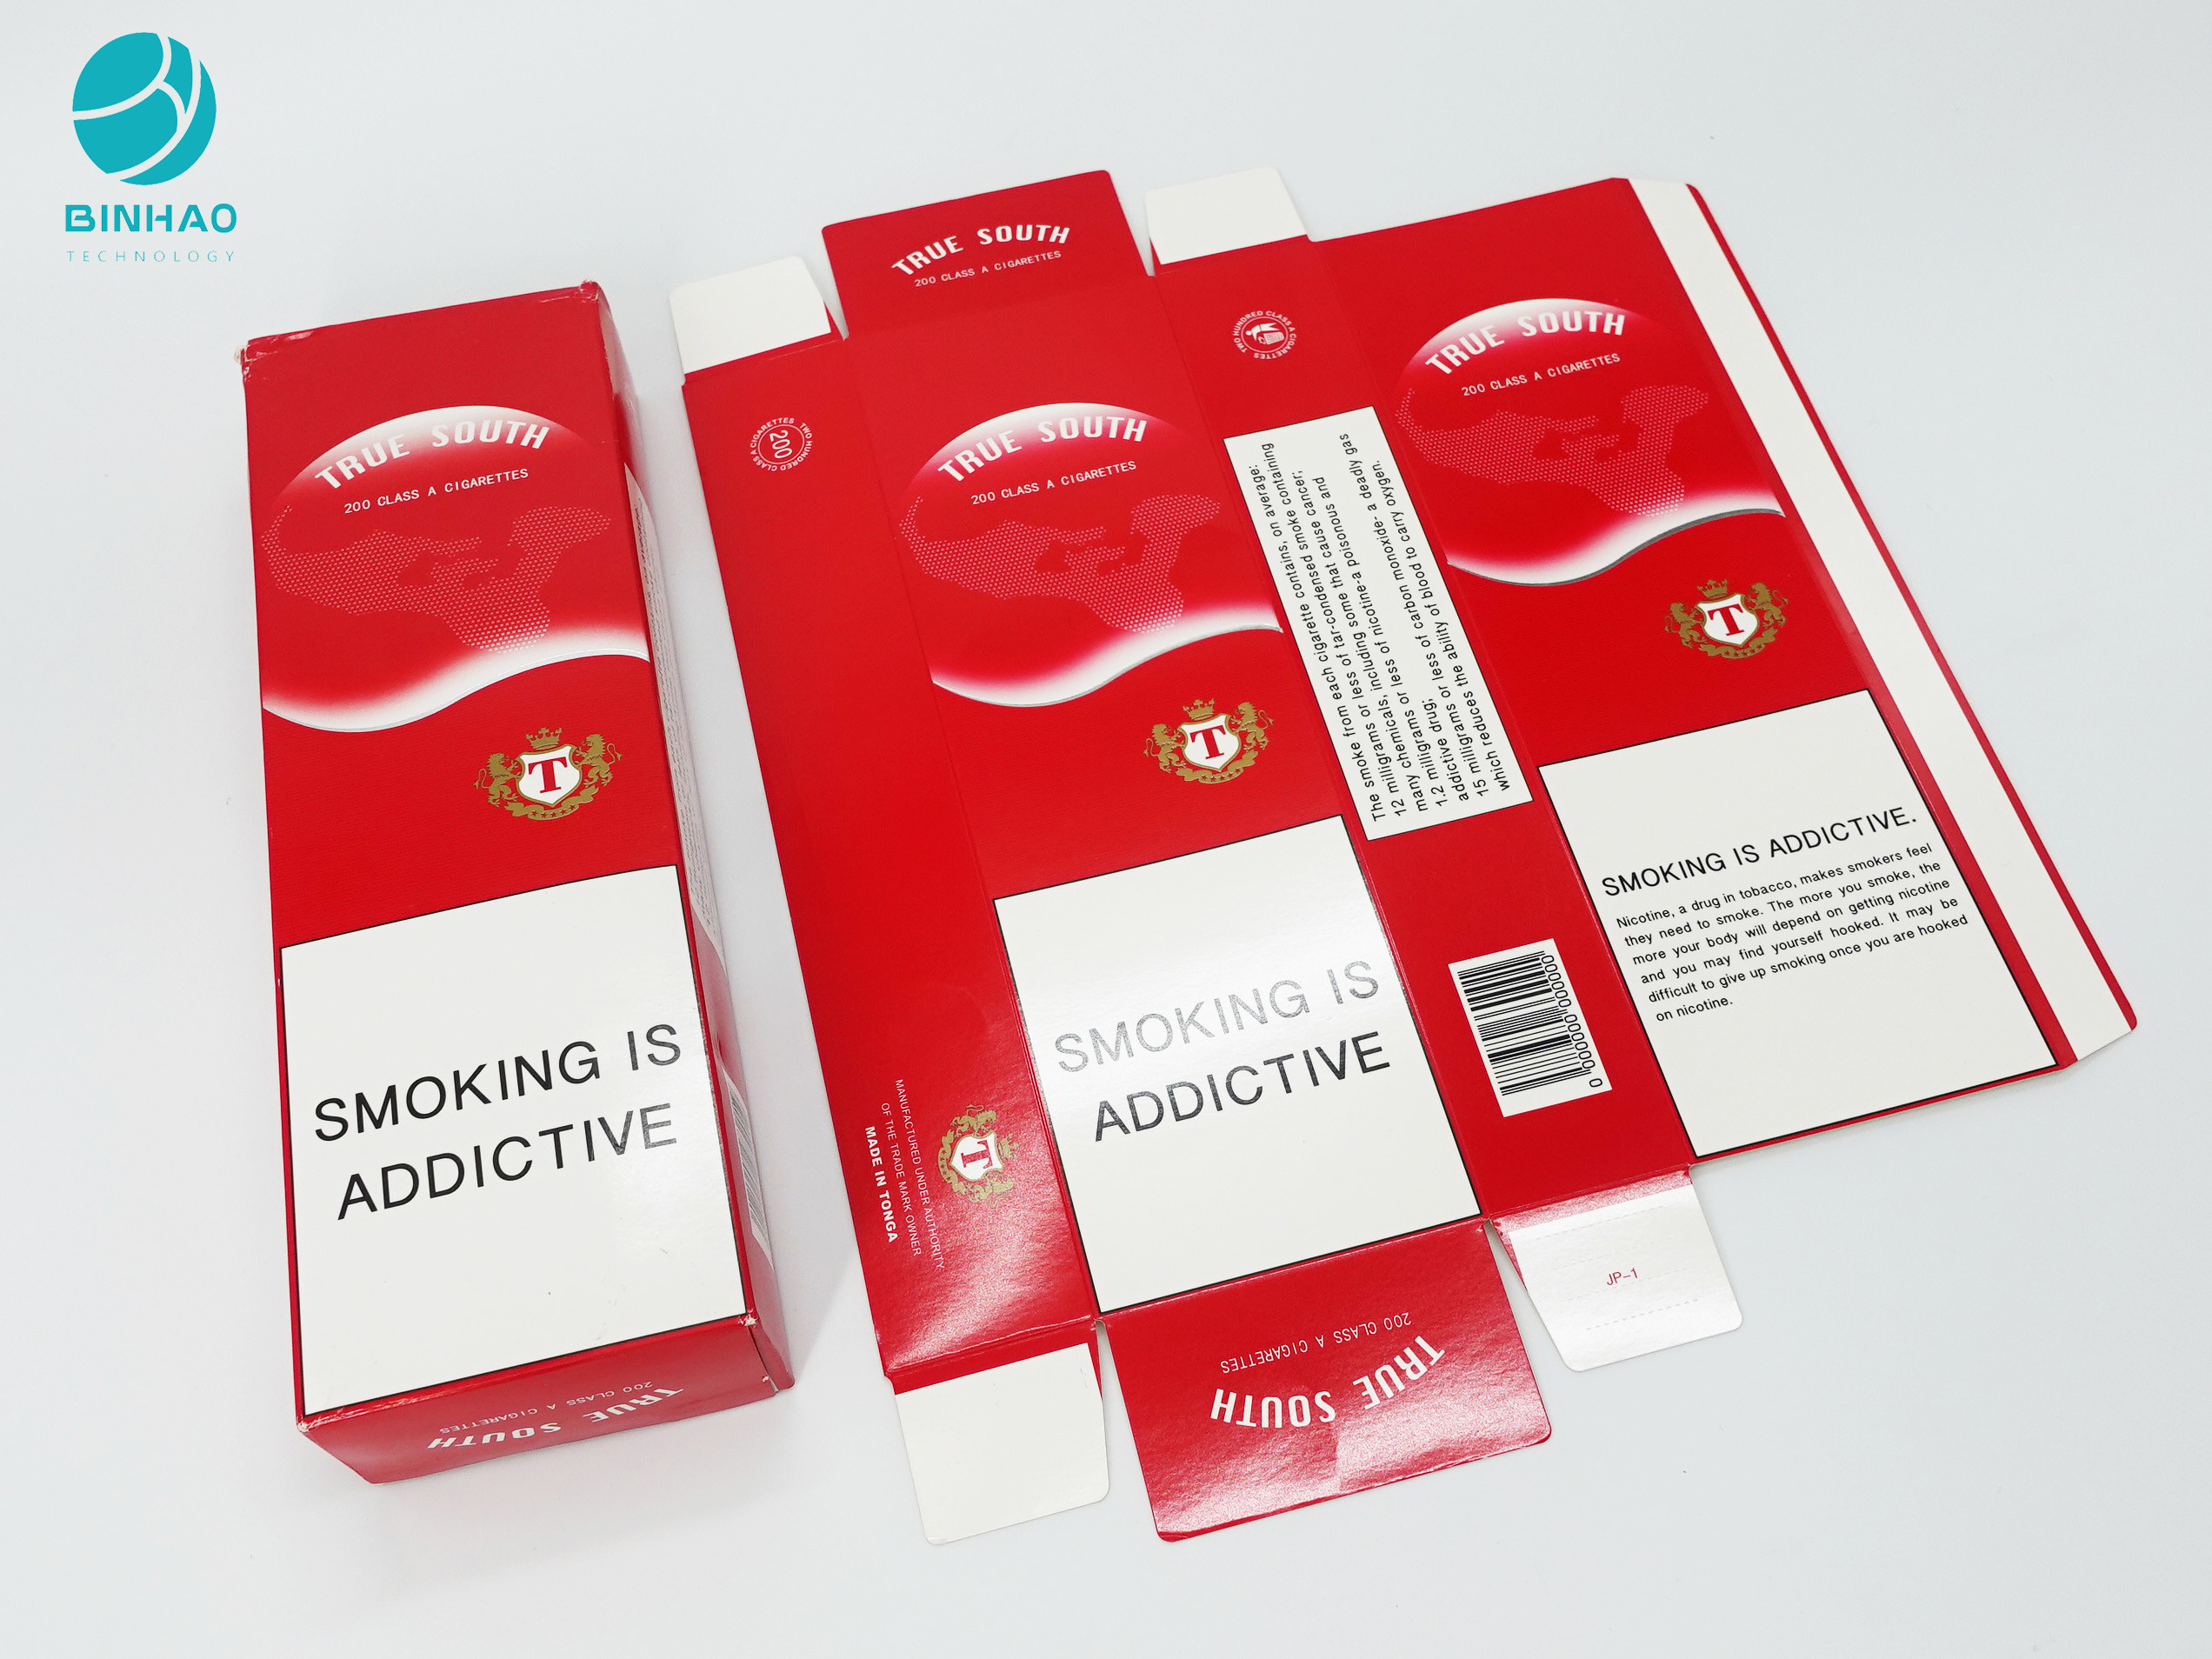 ซองยาสูบทนทานกล่องบรรจุบุหรี่กระดาษแข็งสำหรับผลิตภัณฑ์กล่อง